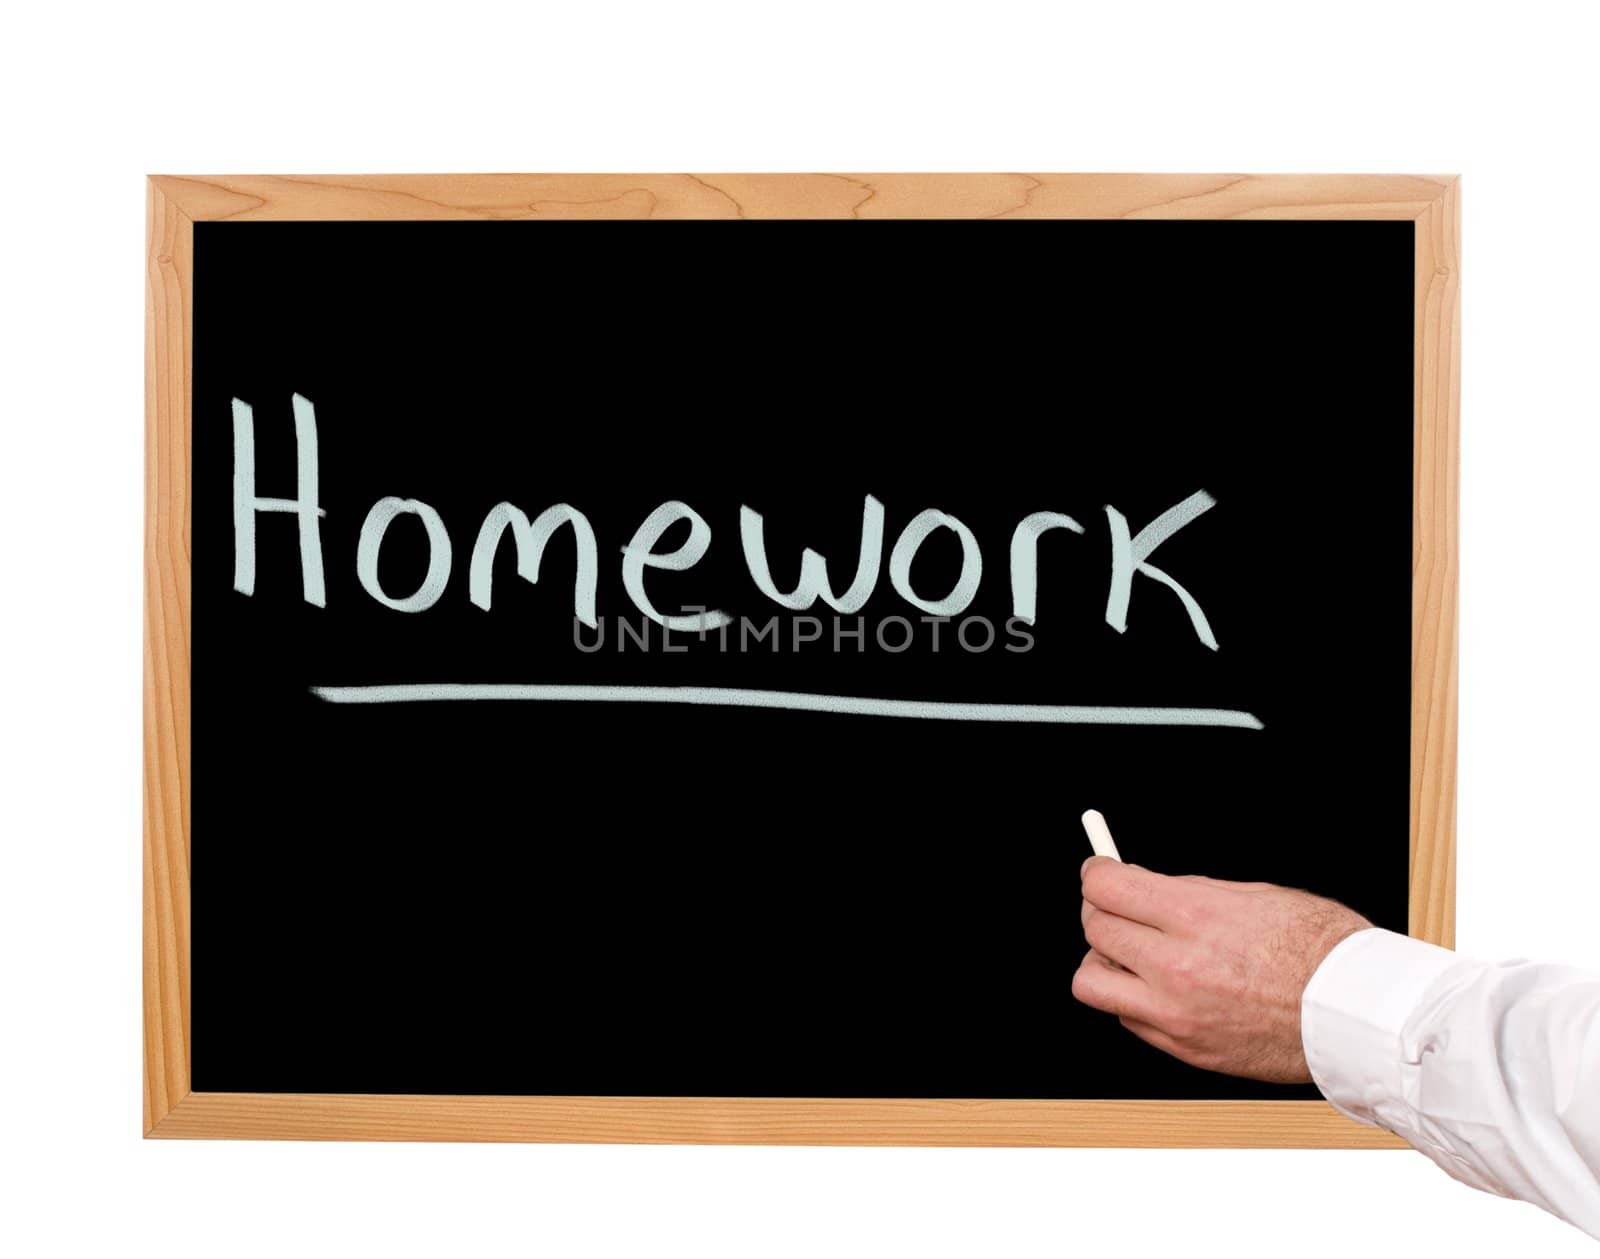 Homework is written in chalk on a chalkboard.